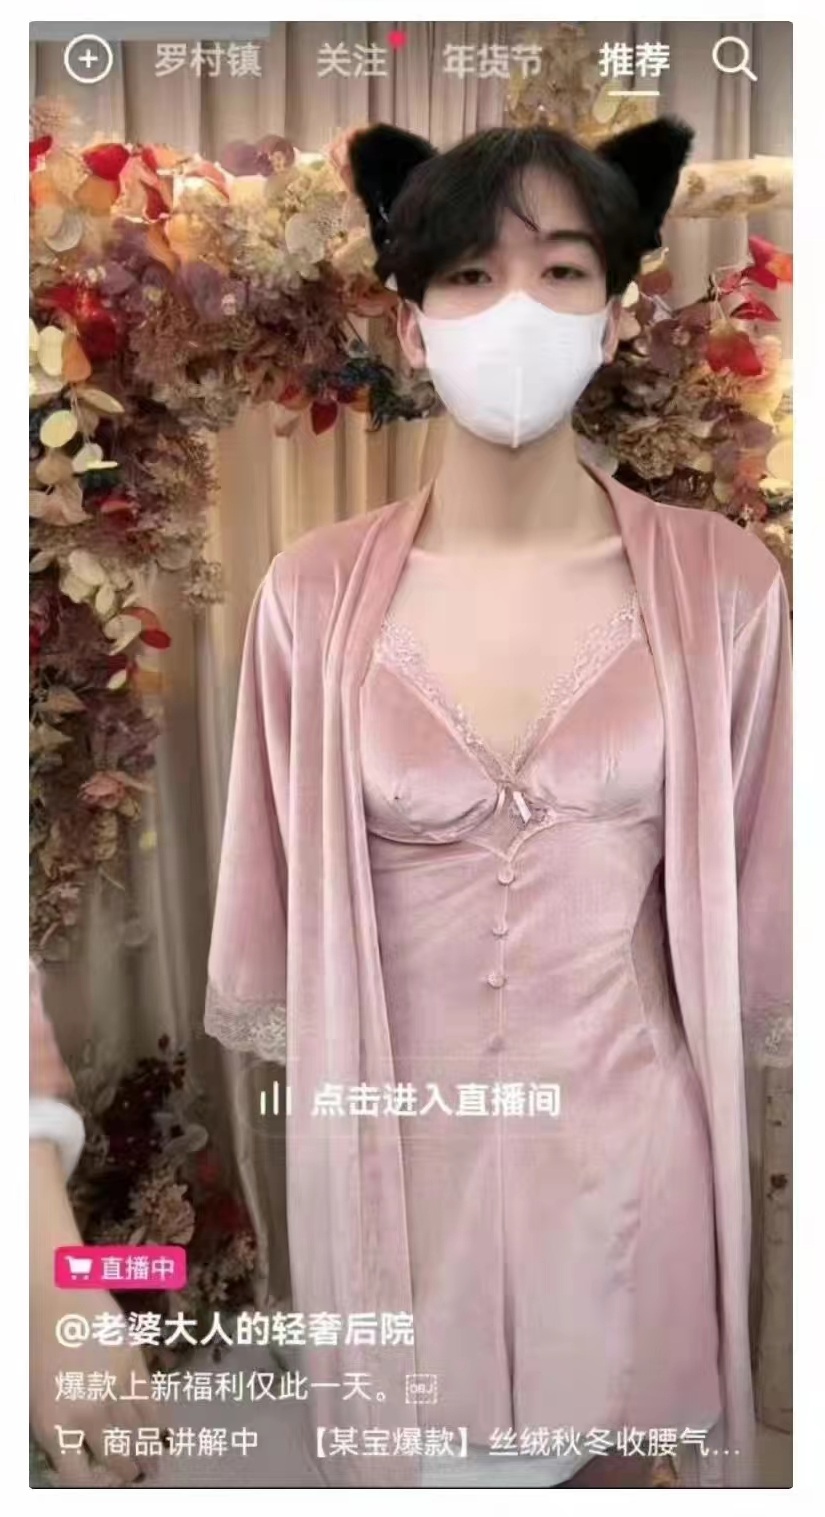 Đây là hình ảnh quen thuộc trên các kênh livestream bán đồ lót nữ tại sàn giao dịch thương mại ở Trung Quốc